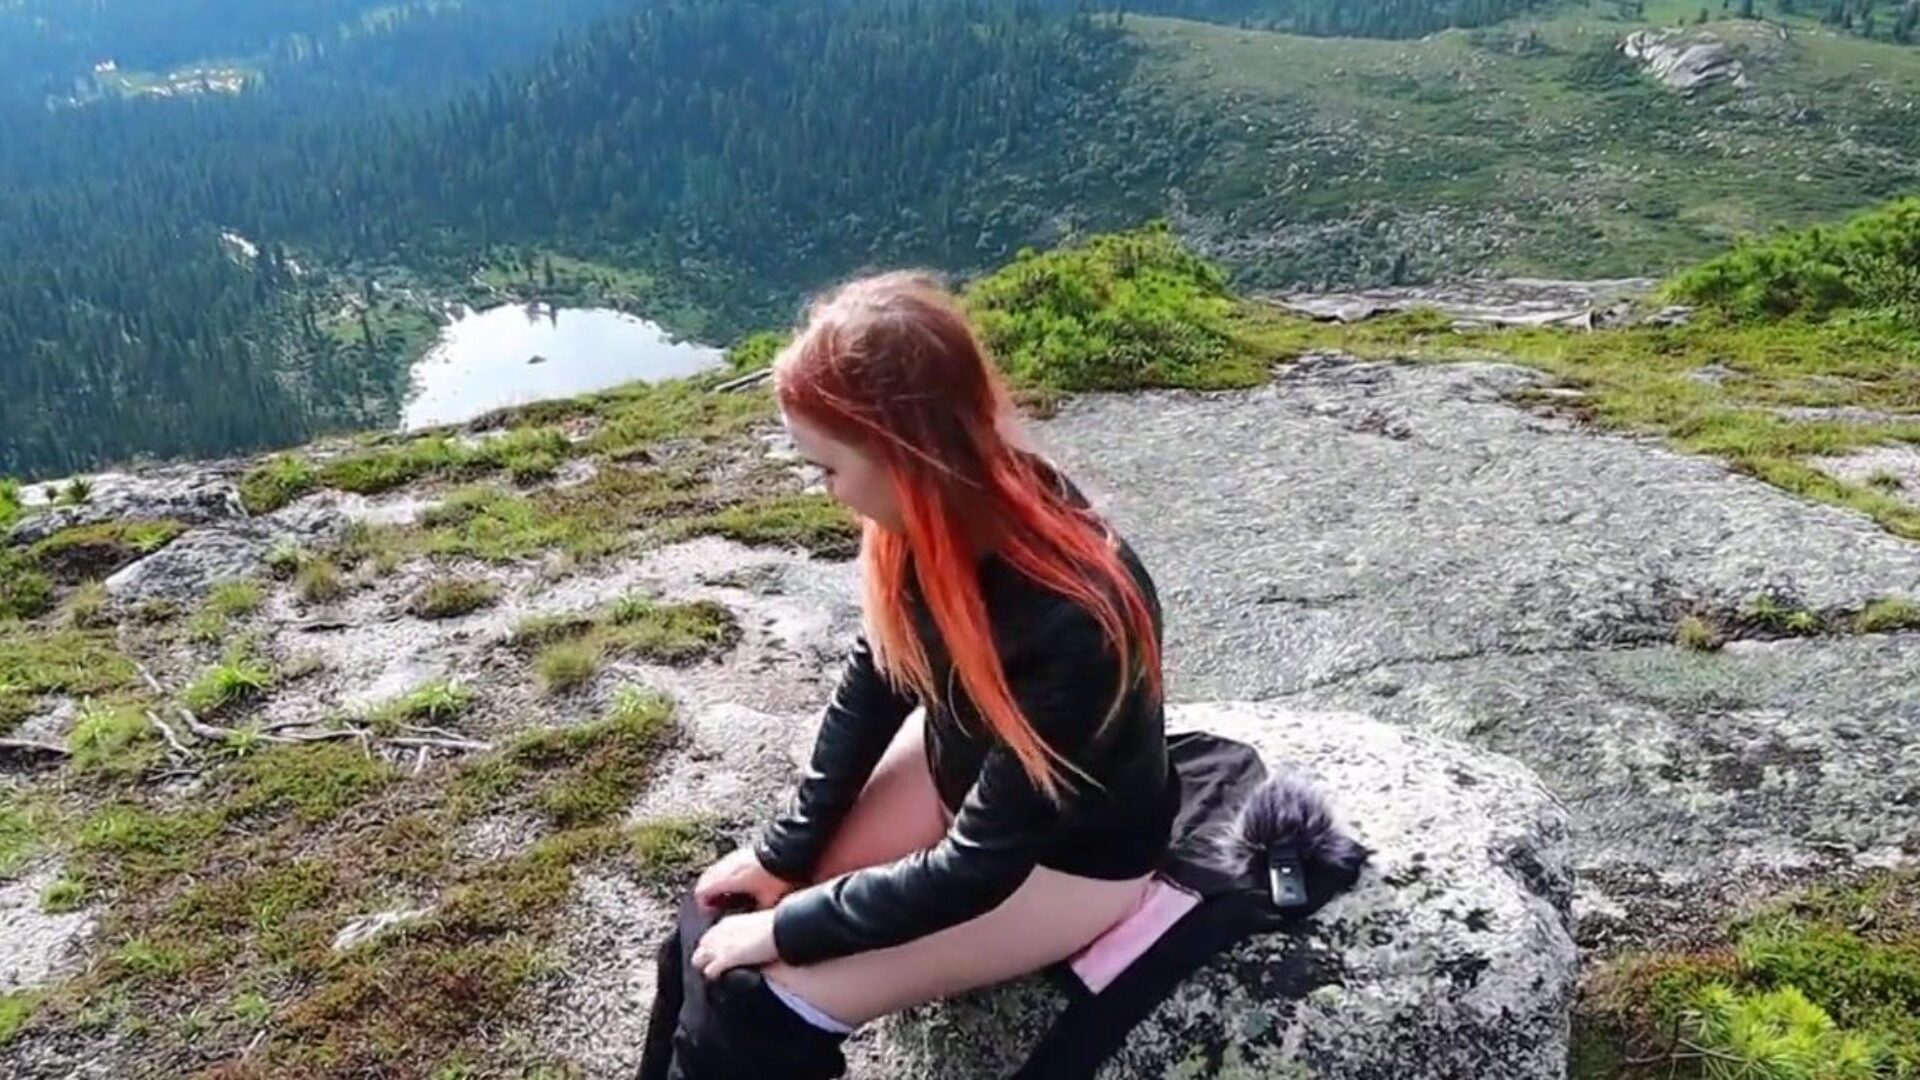 dziewczyna postanowiła odpocząć, masturbować swoją cipkę i osiągnąć orgazm wysoko w górach!